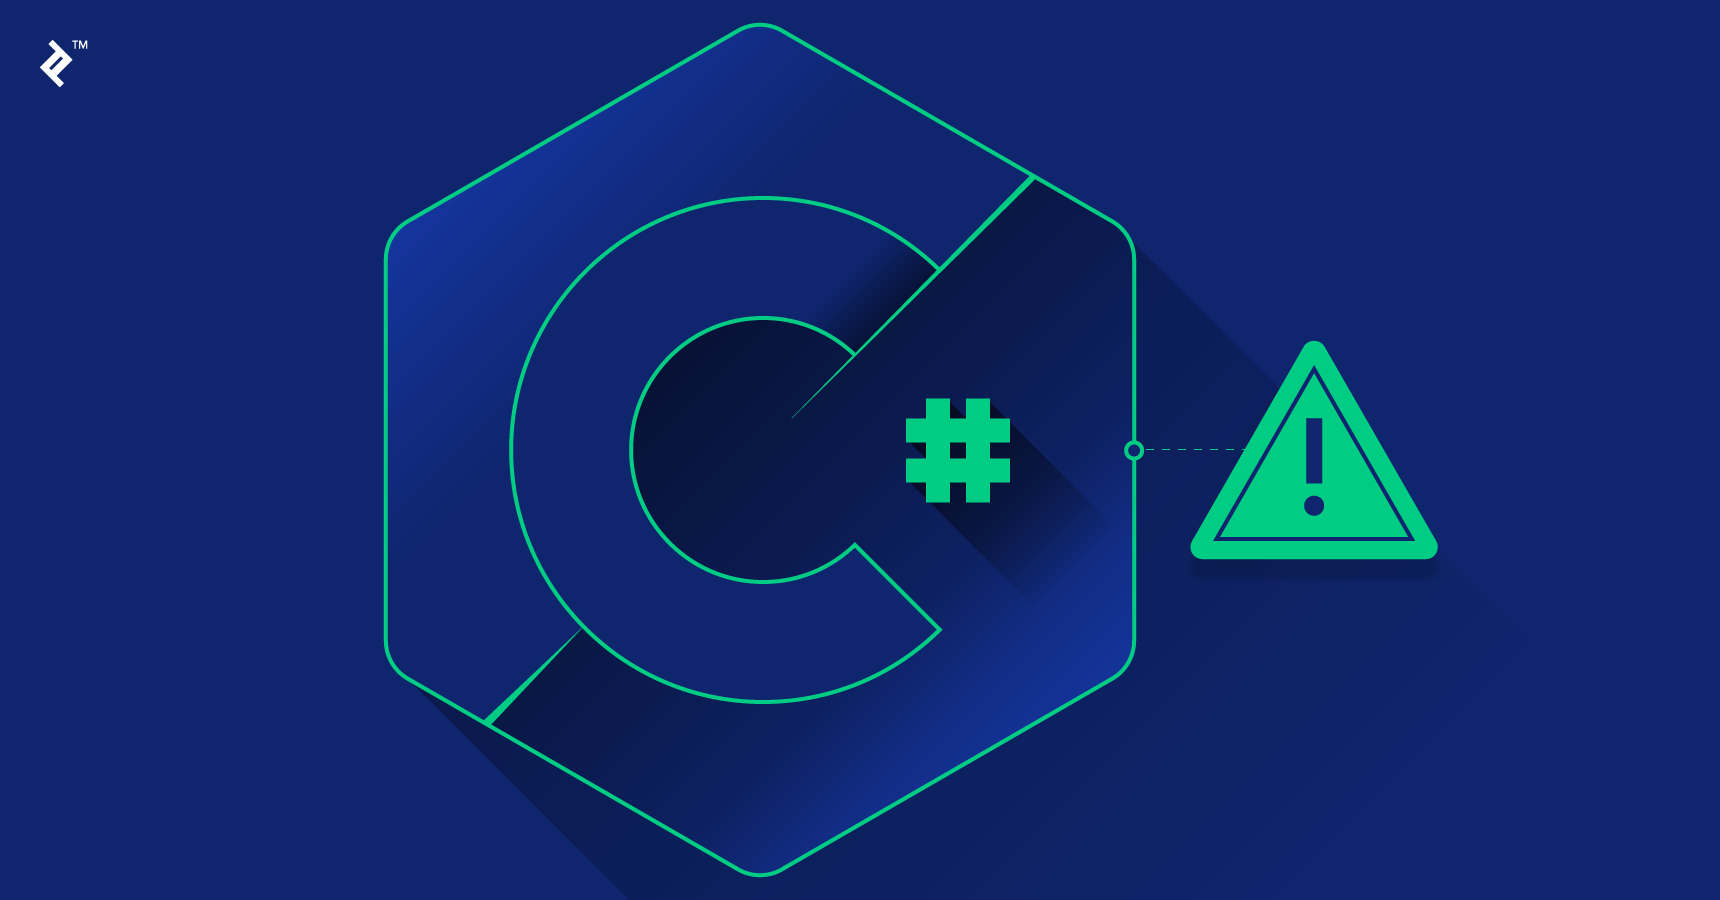 C# Programming Language Guide